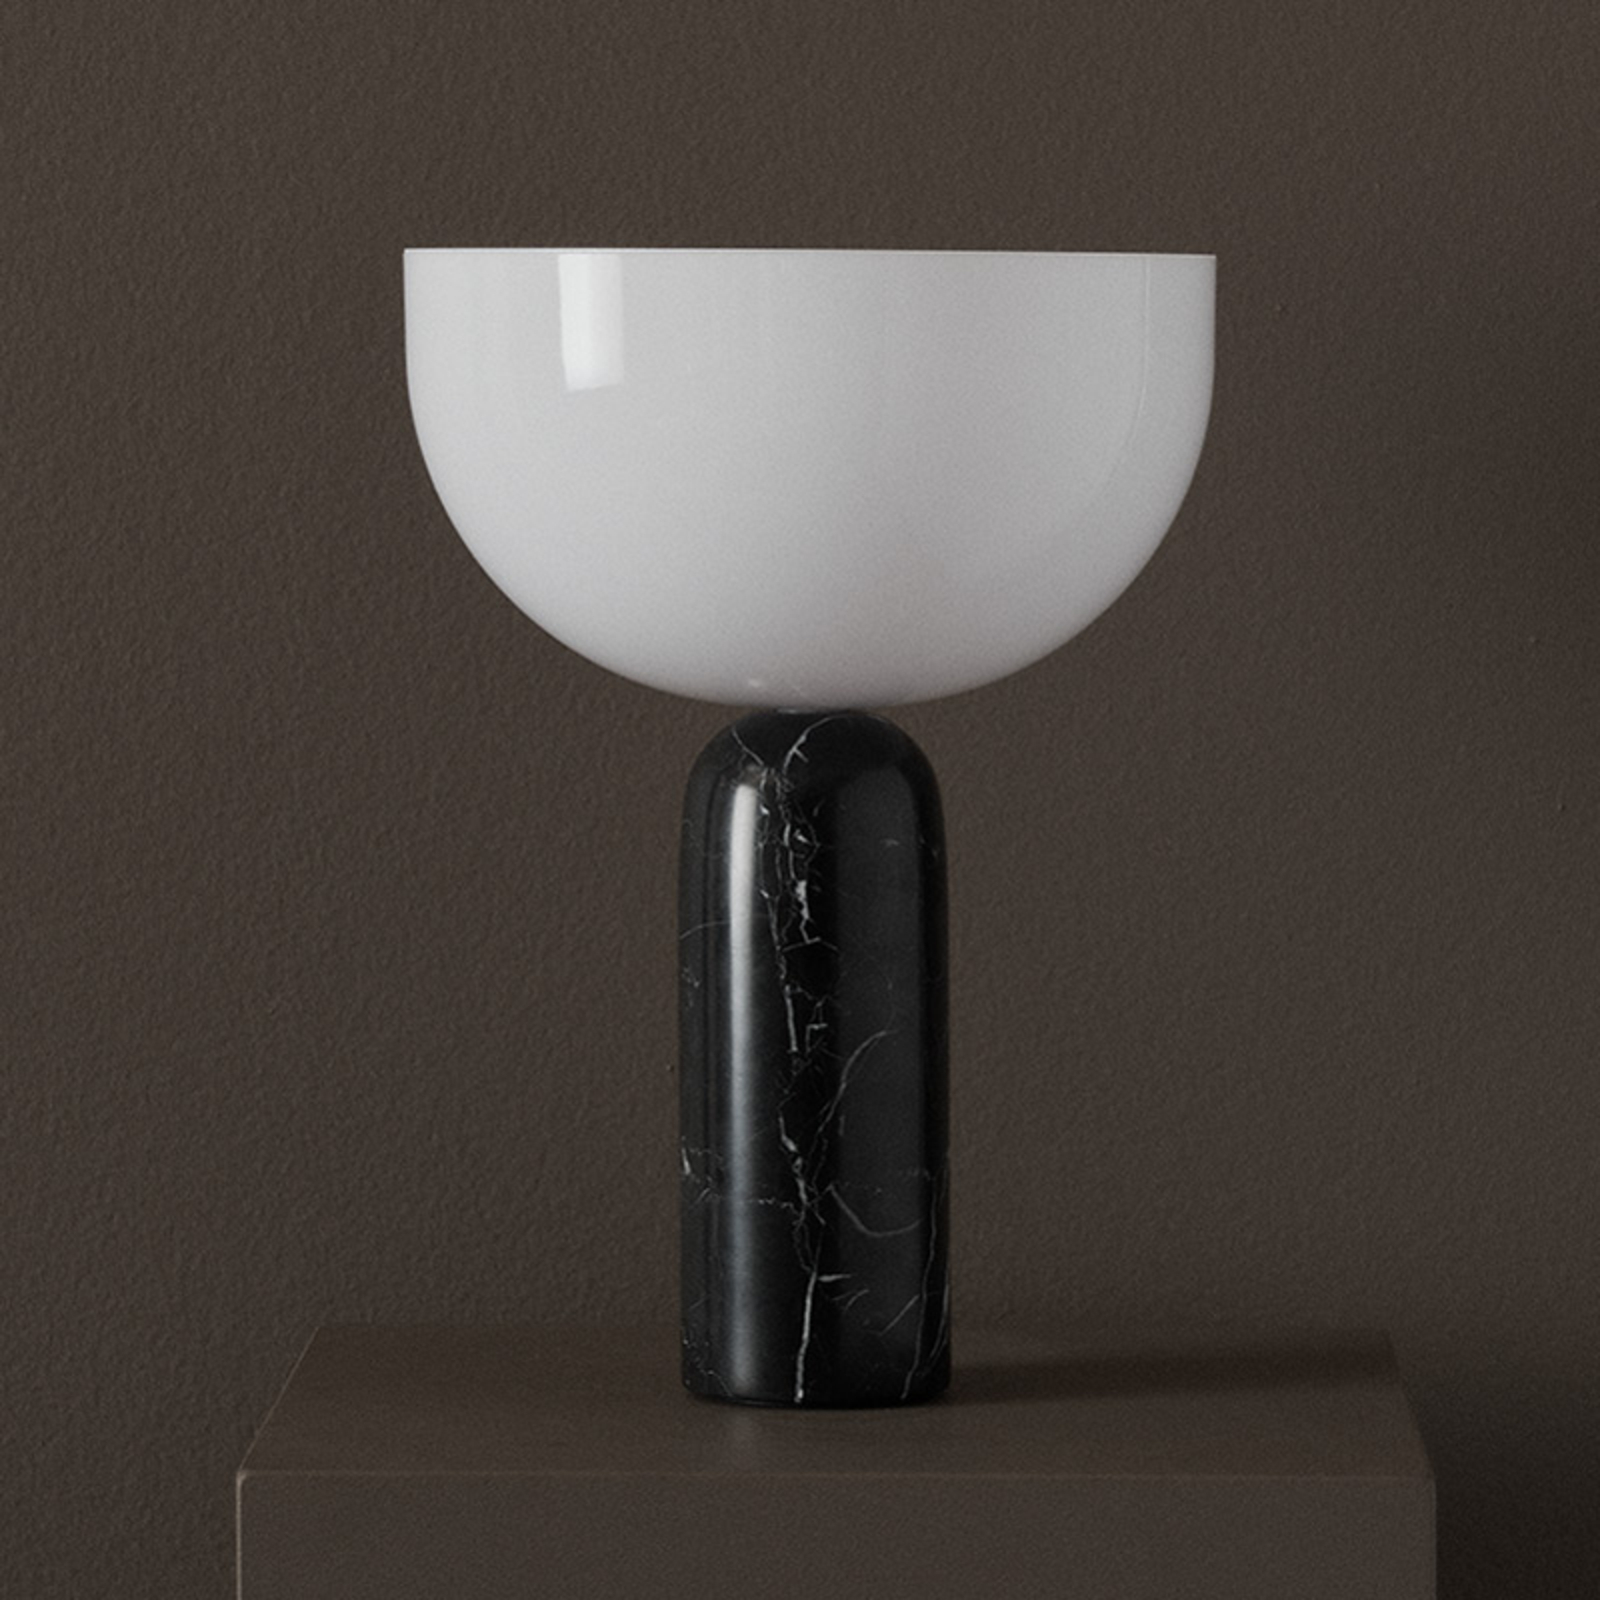 New Works Kizu Μικρό επιτραπέζιο φωτιστικό, μαύρο